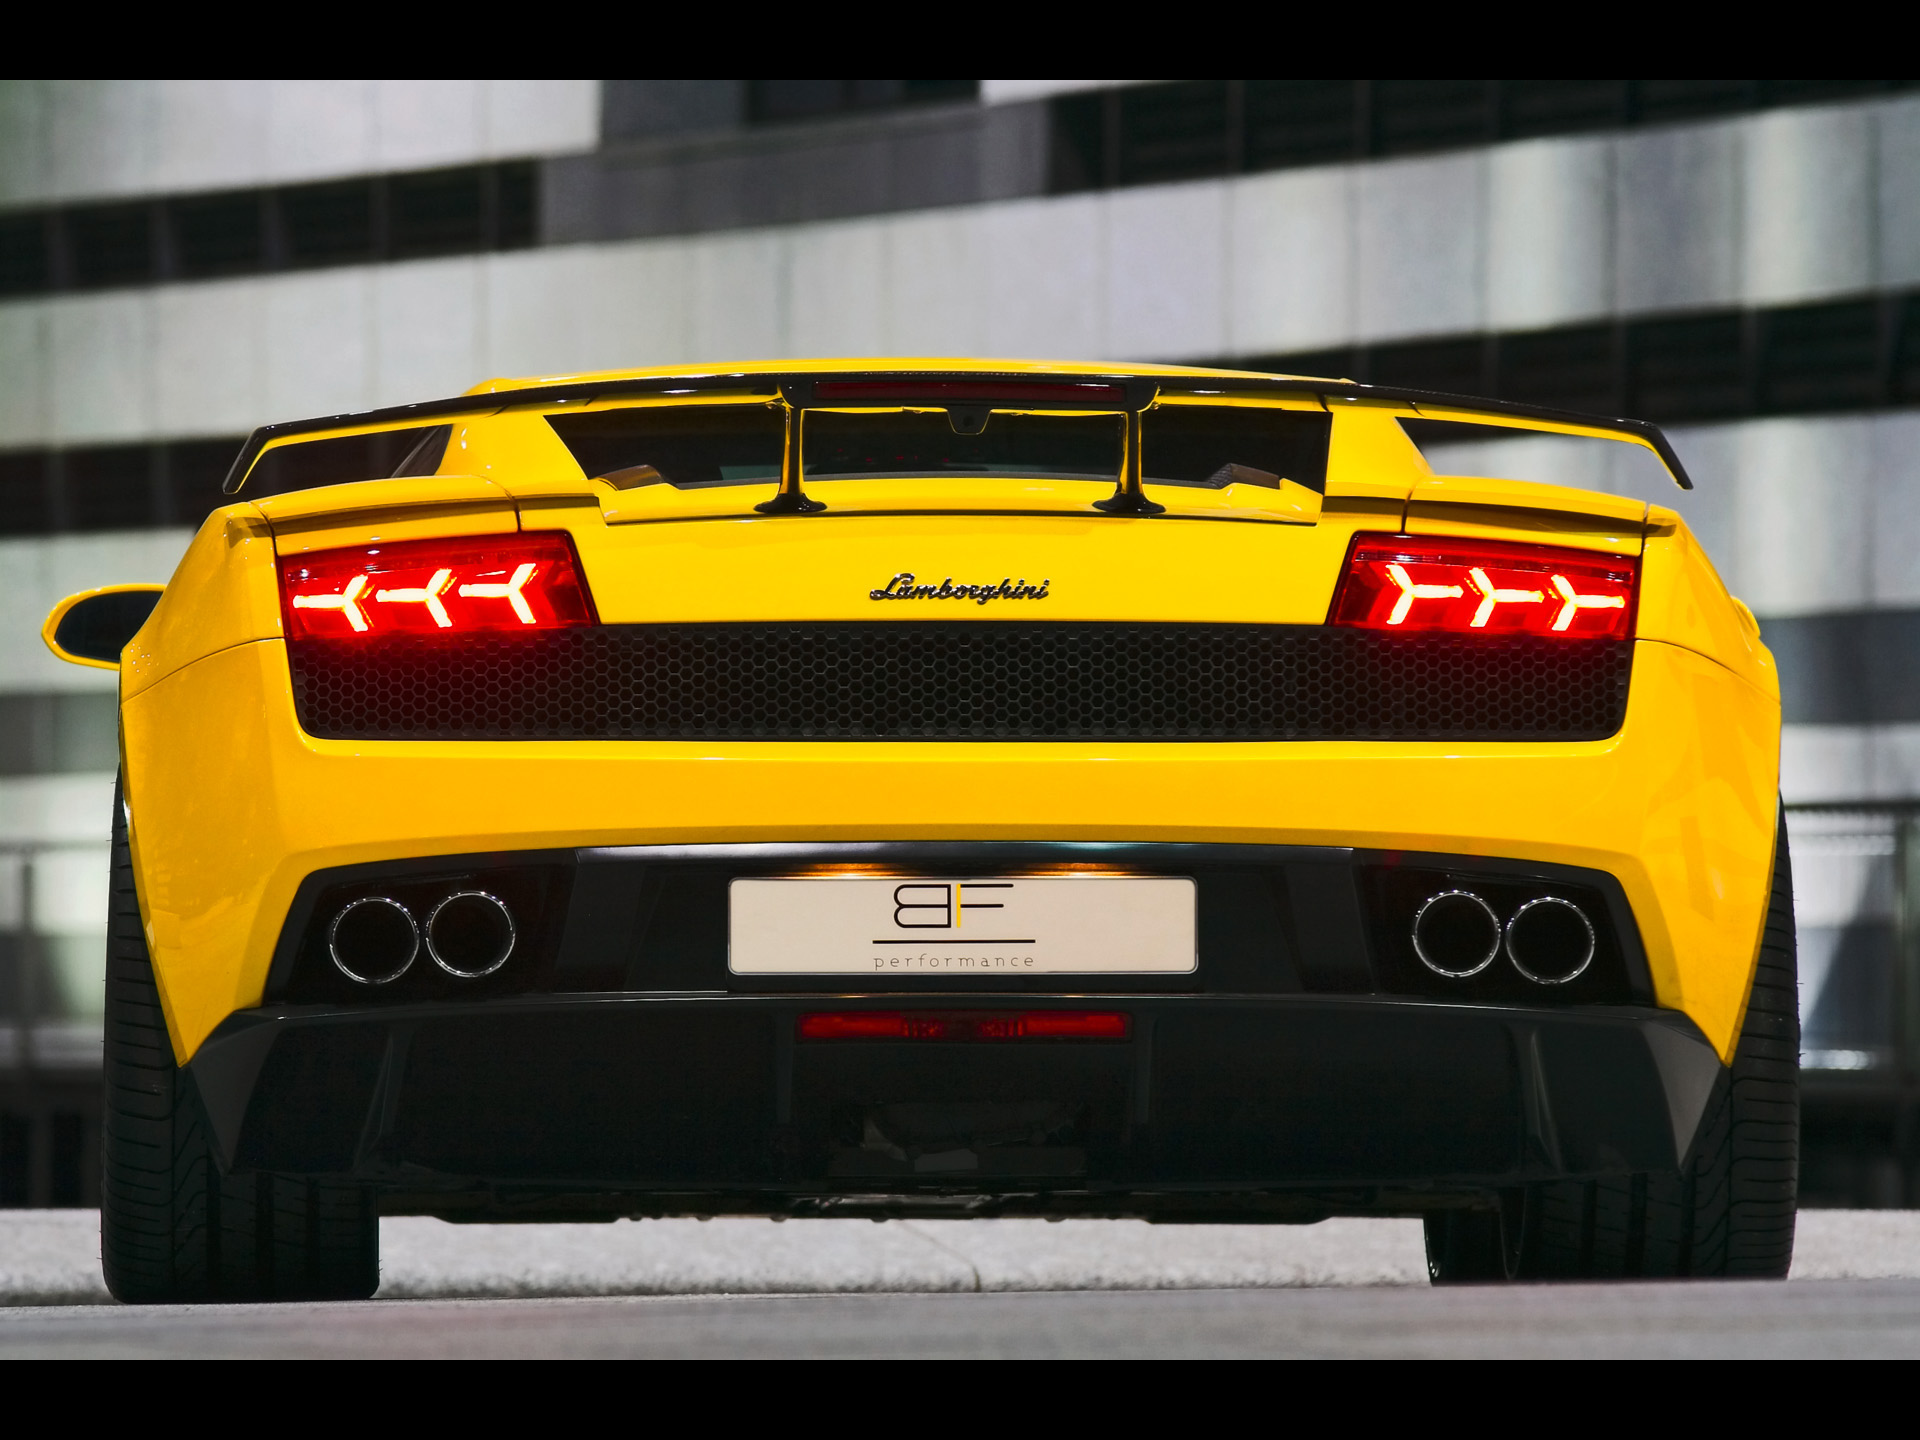 2010 Yellow Lamborghini Gallardo - HD Wallpaper 